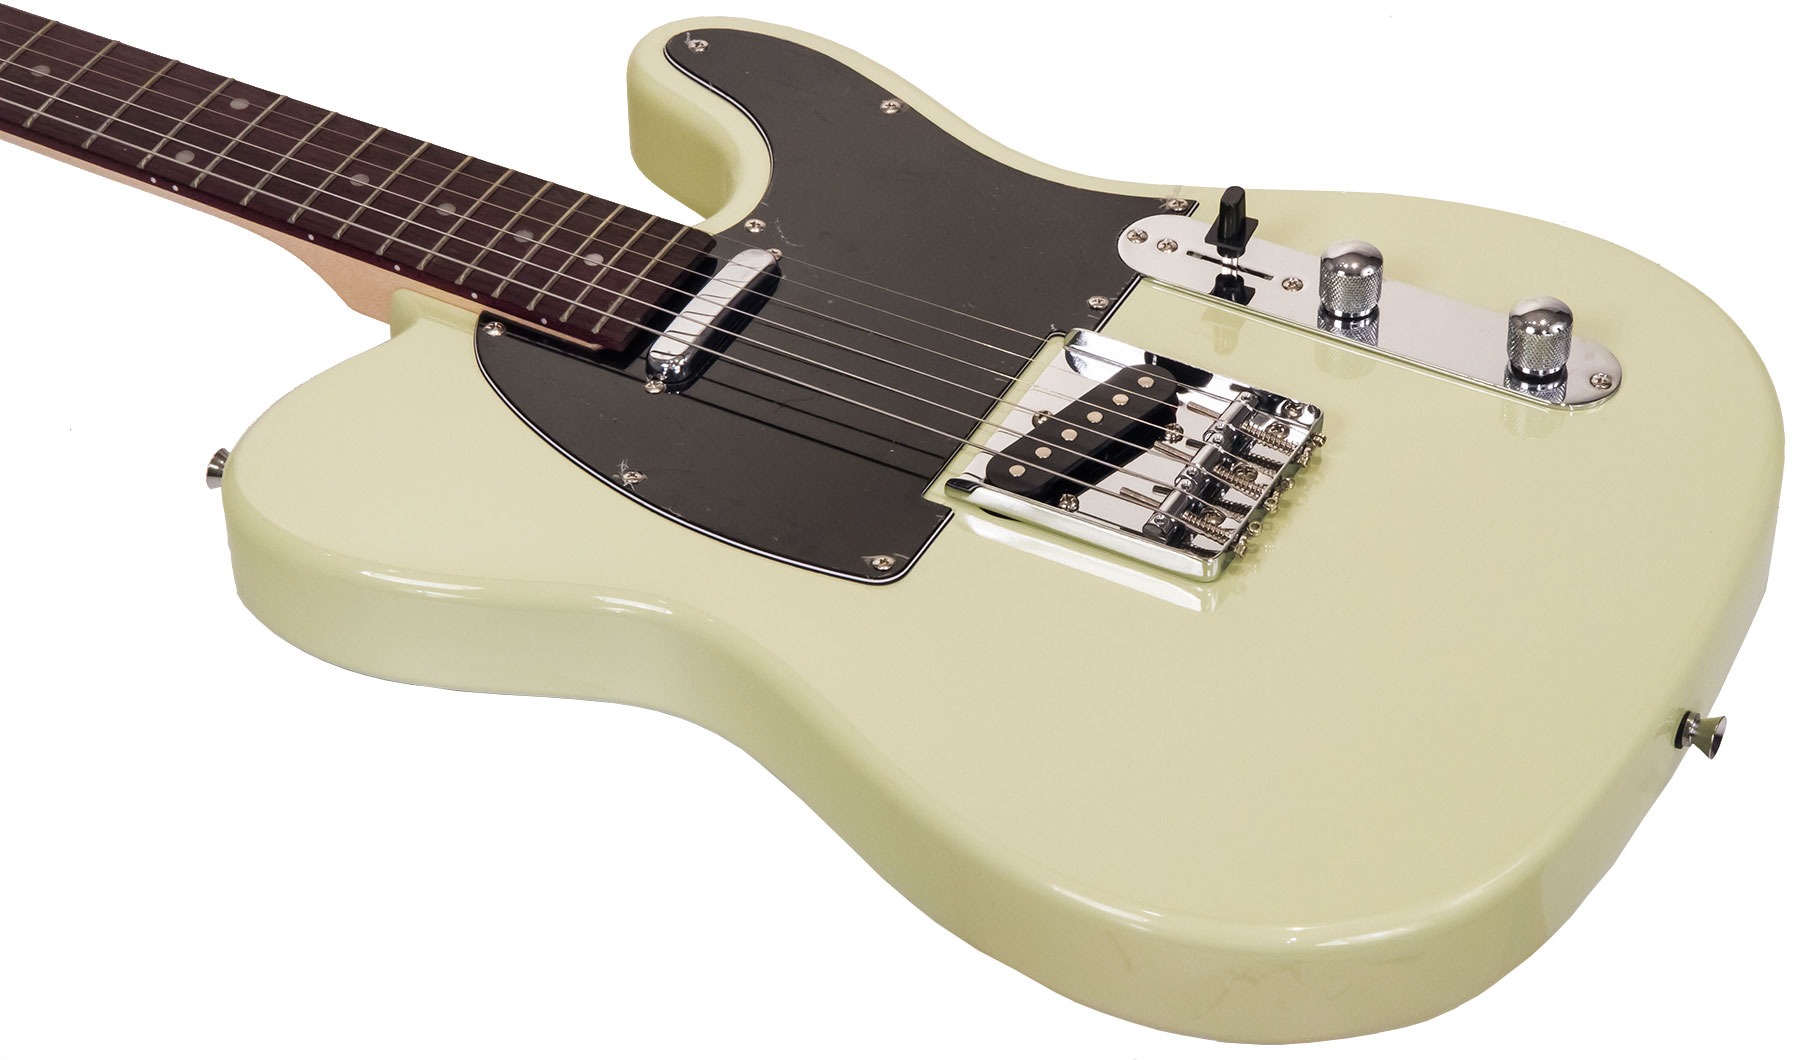 Eastone Tl70 Ss Ht Rw - Ivory - Guitarra eléctrica con forma de tel - Variation 2